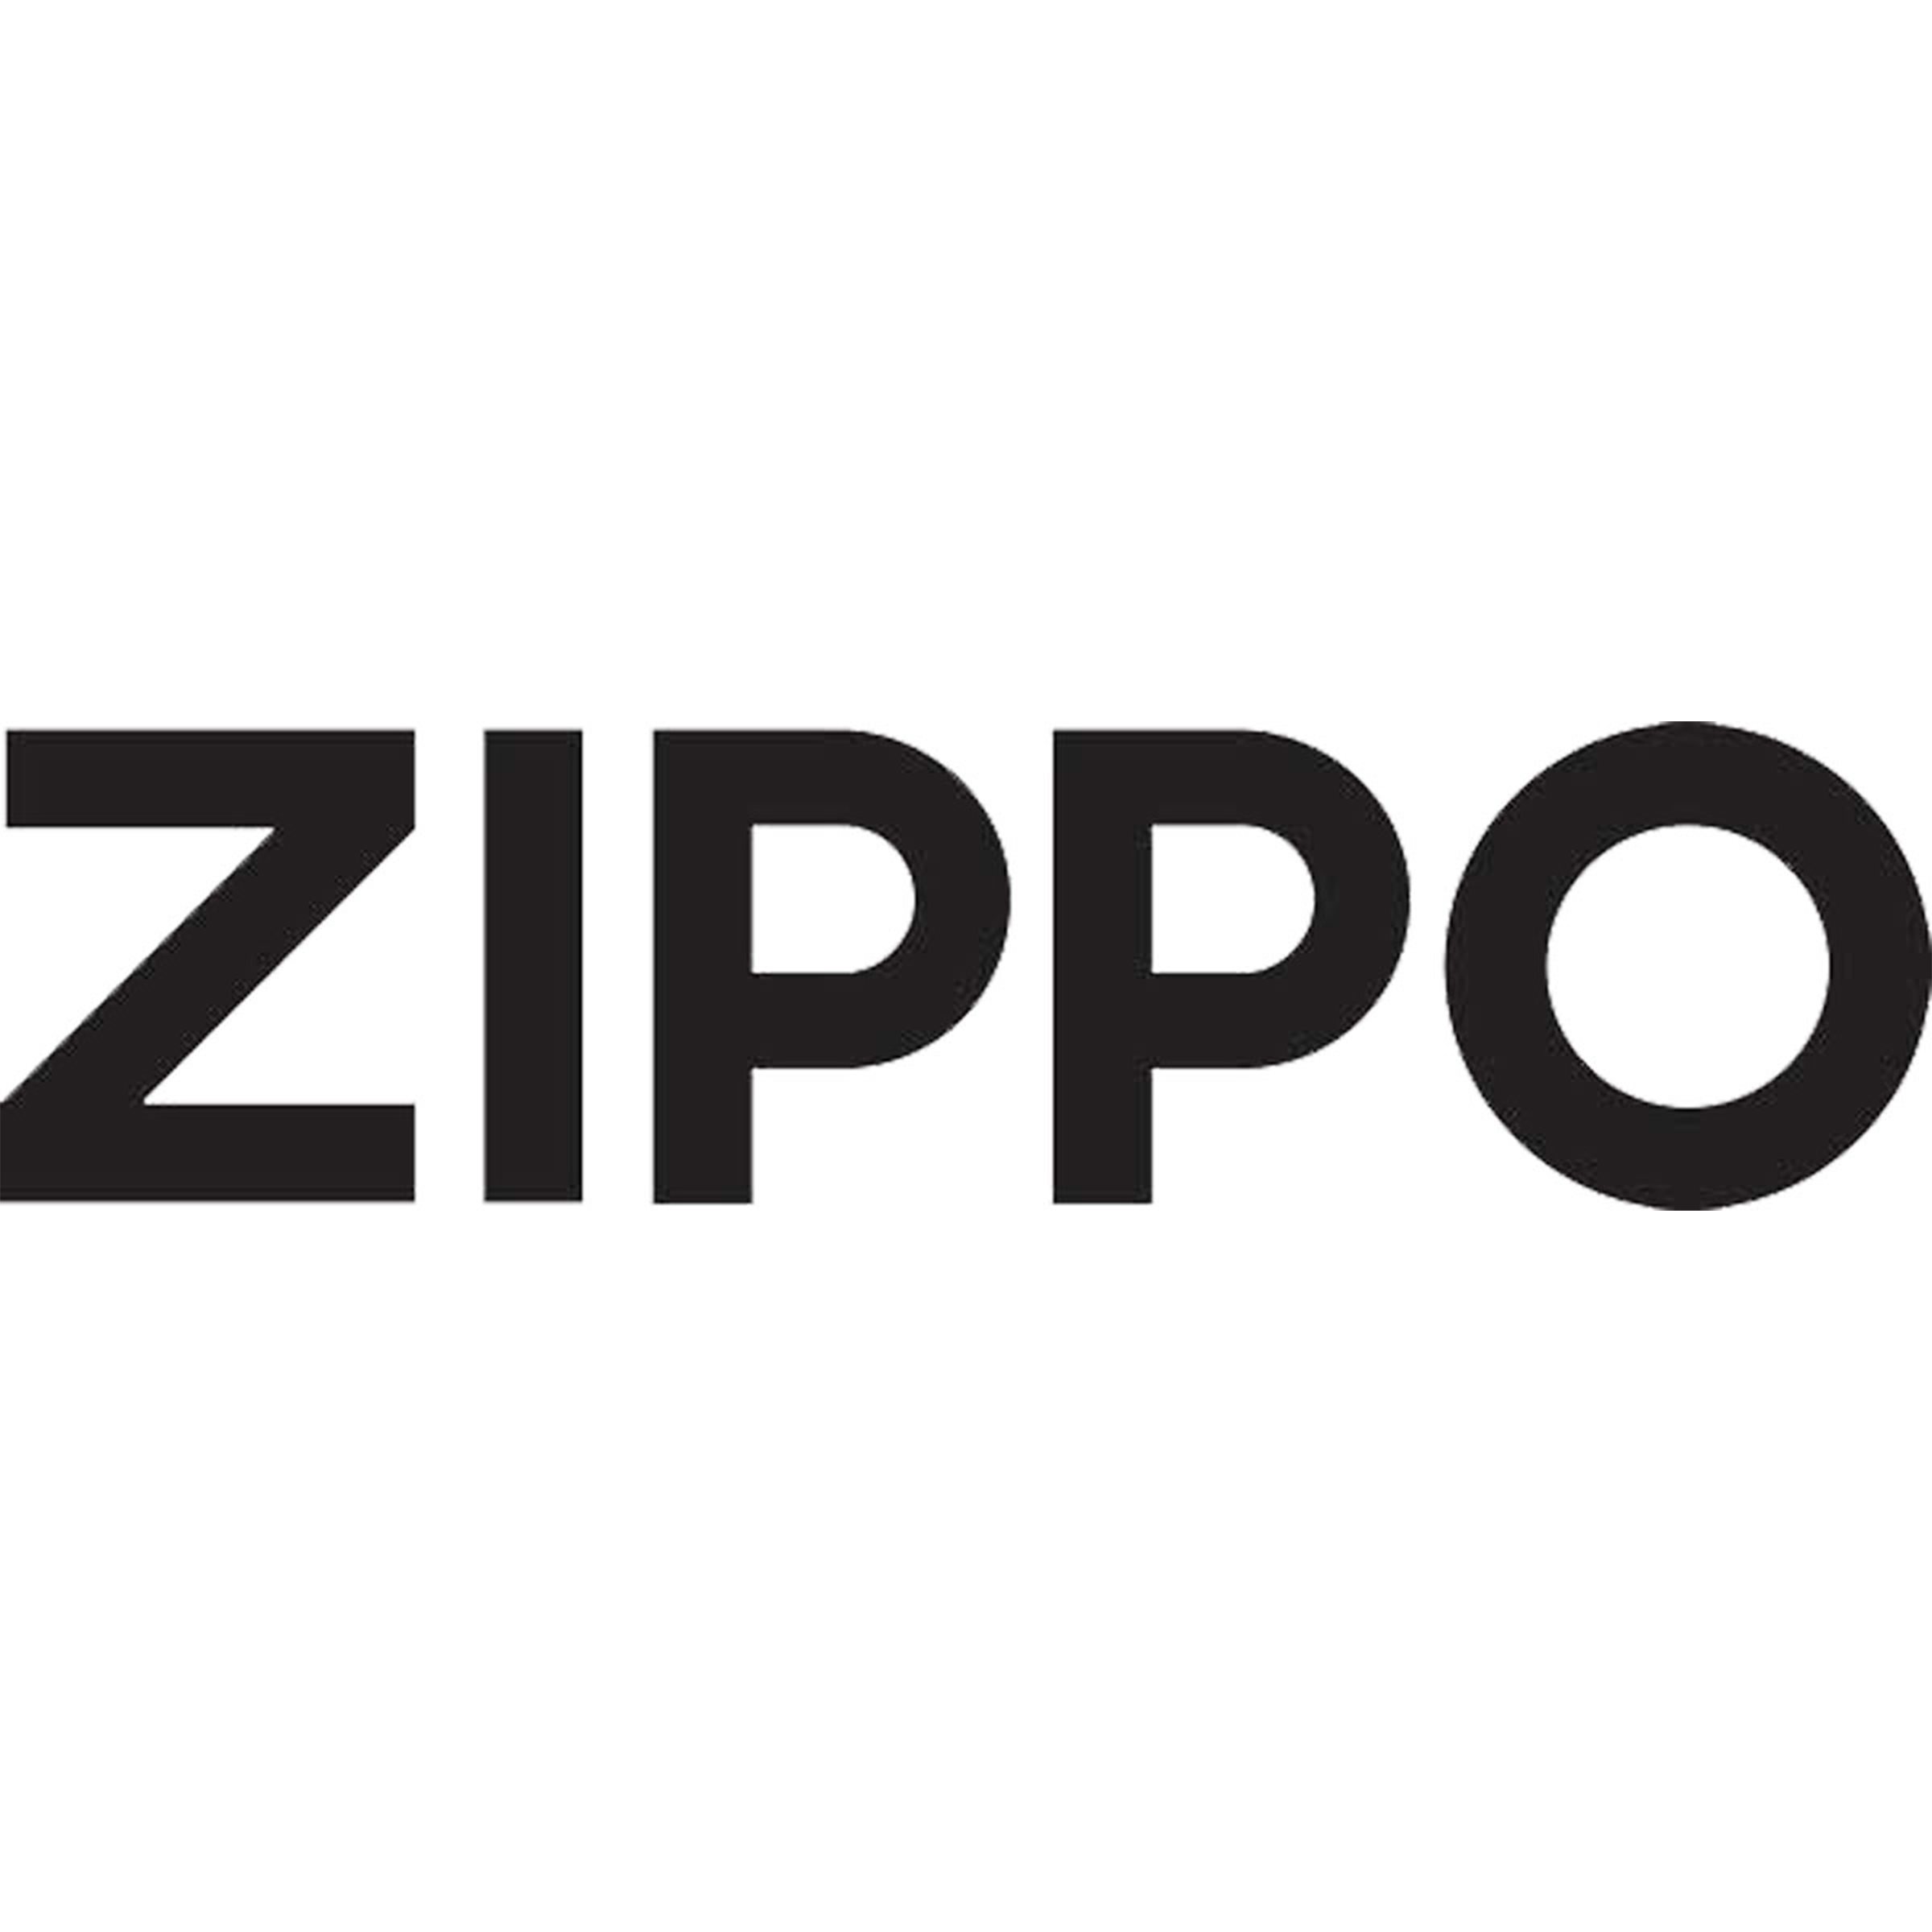 A_Zippo